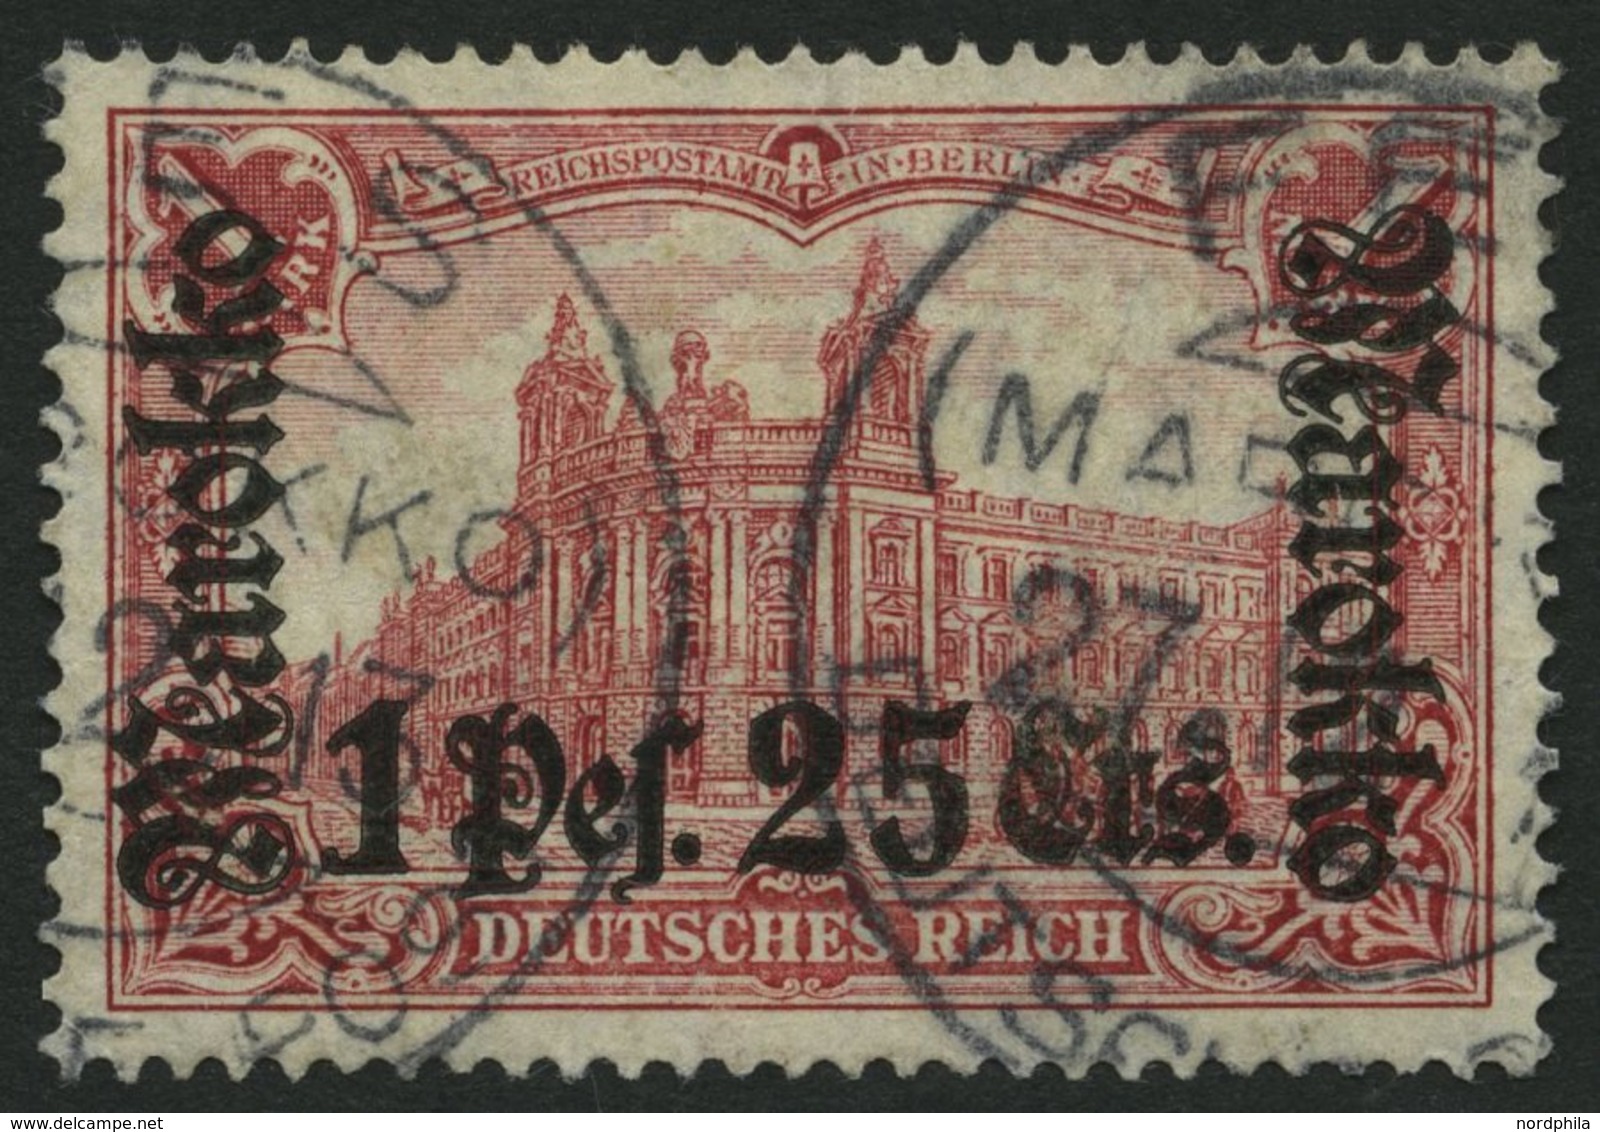 DP IN MAROKKO 55IA O, 1911, 1 P. 25 C. Auf 1 M., Friedensdruck, Stempel FES, Pracht, Gepr. Steuer, Mi. 80.- - Morocco (offices)